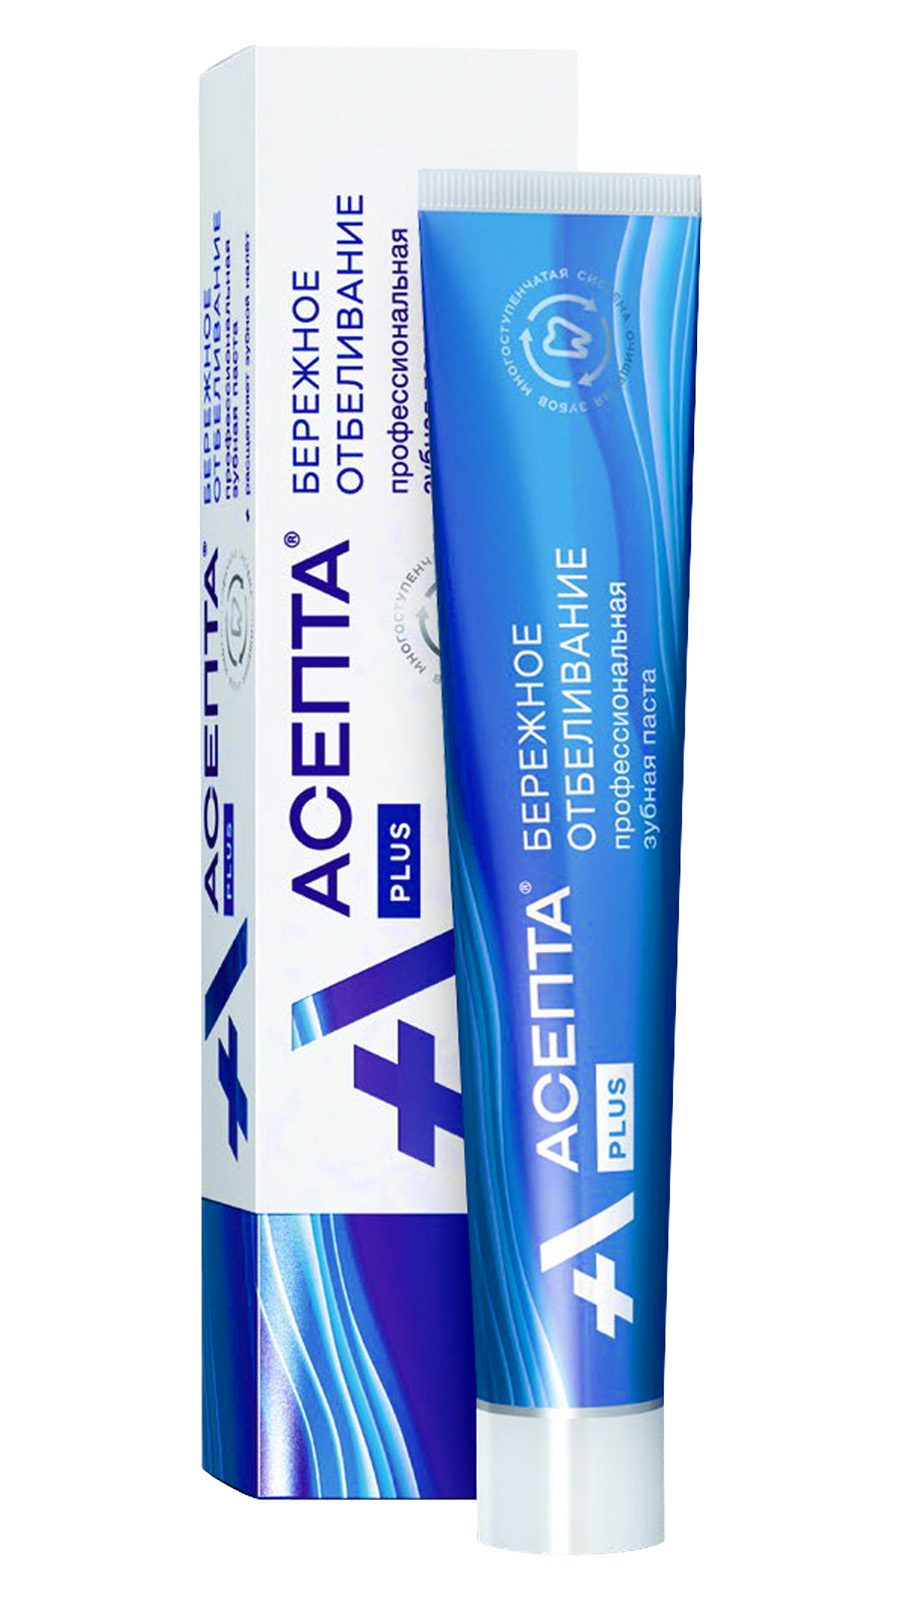 Асепта Plus Бережное Отбеливание, зубная паста, 75 мл kerasys dс 2080 pro mild зубная паста для чувствительных зубов и десен 125 г